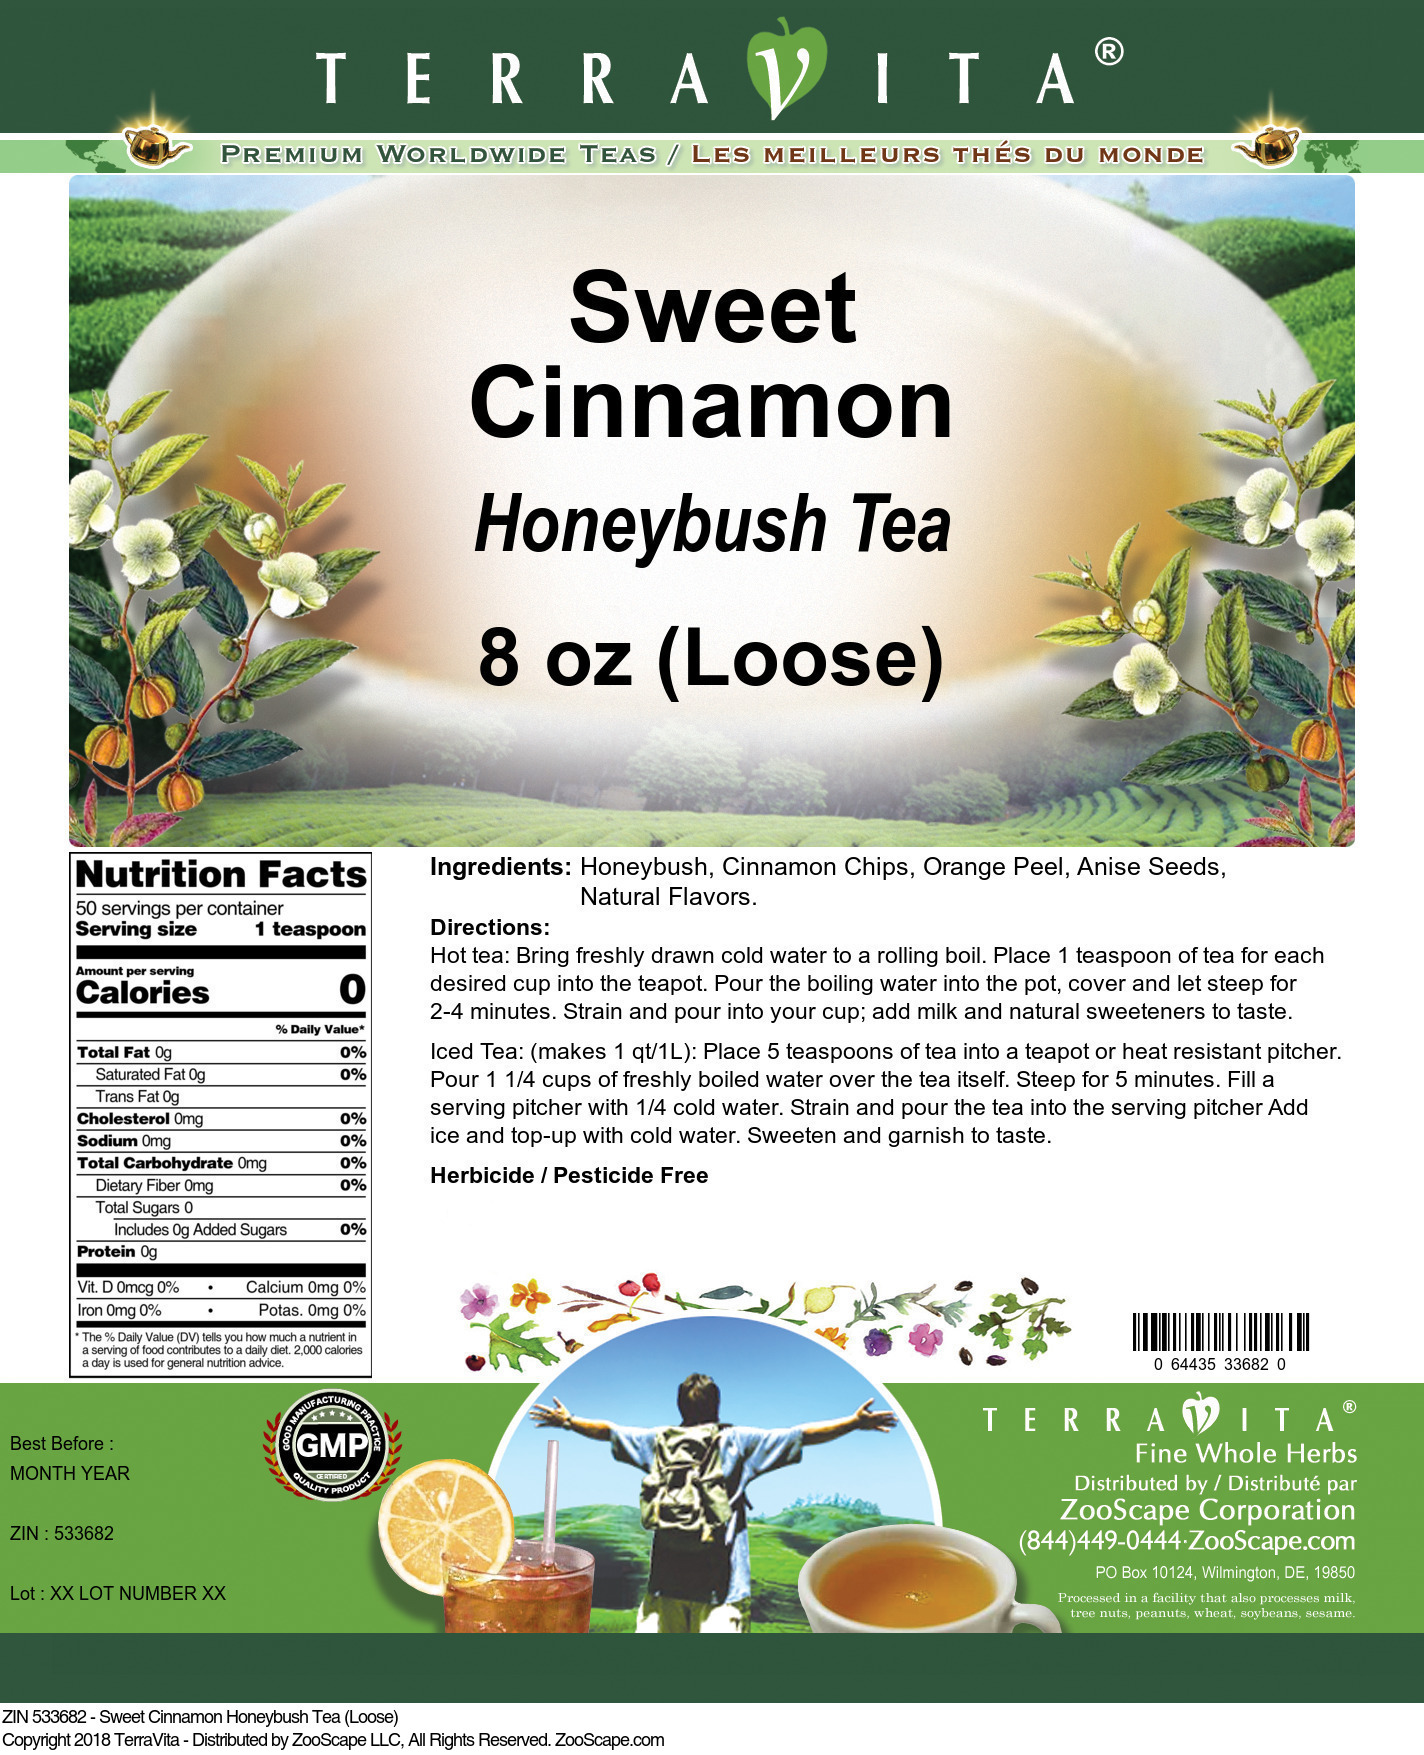 Sweet Cinnamon Honeybush Tea (Loose) - Label